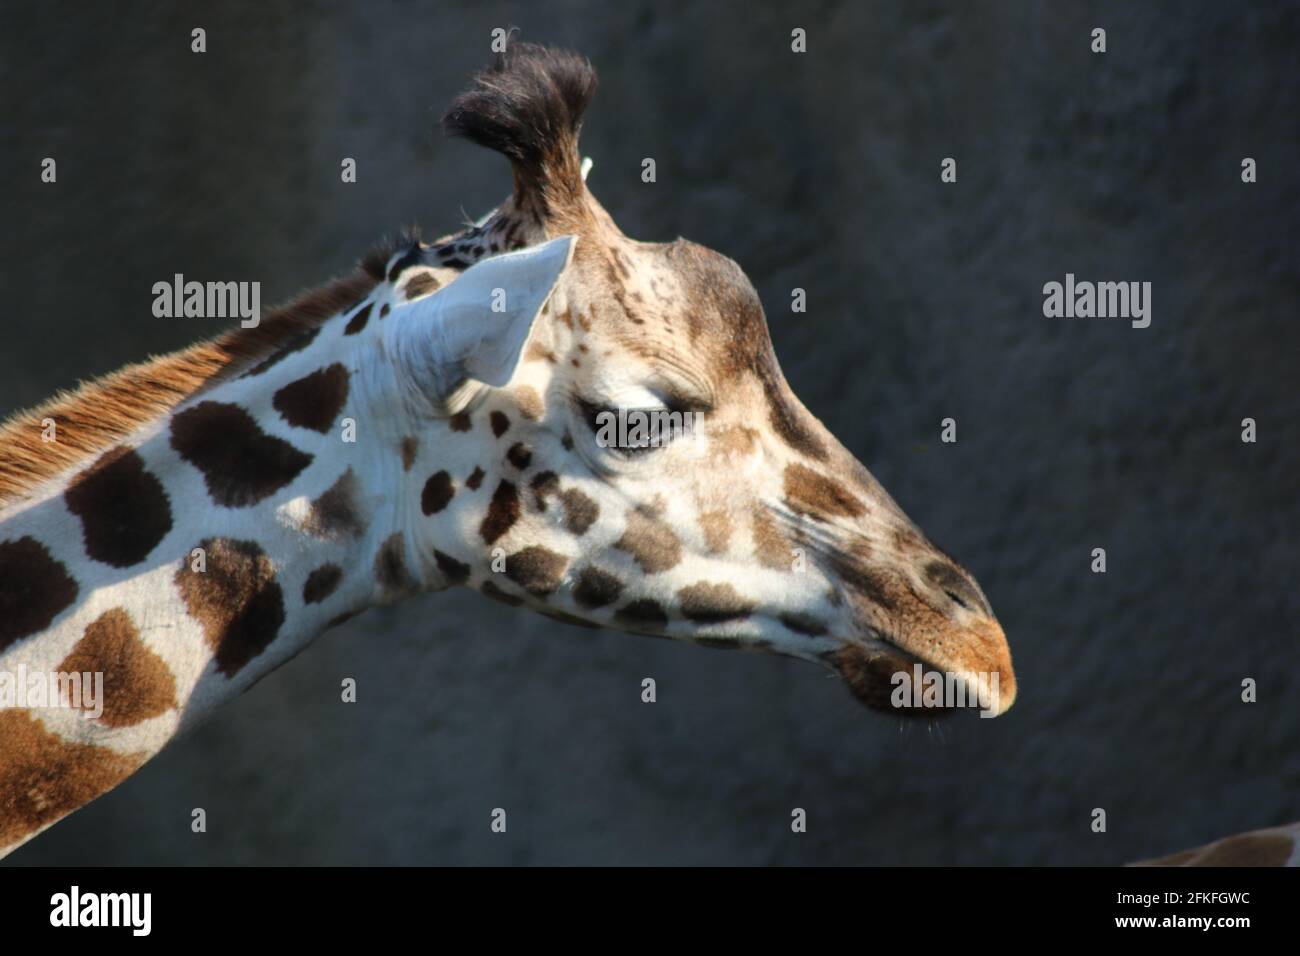 Girafe, Giraffe Stock Photo